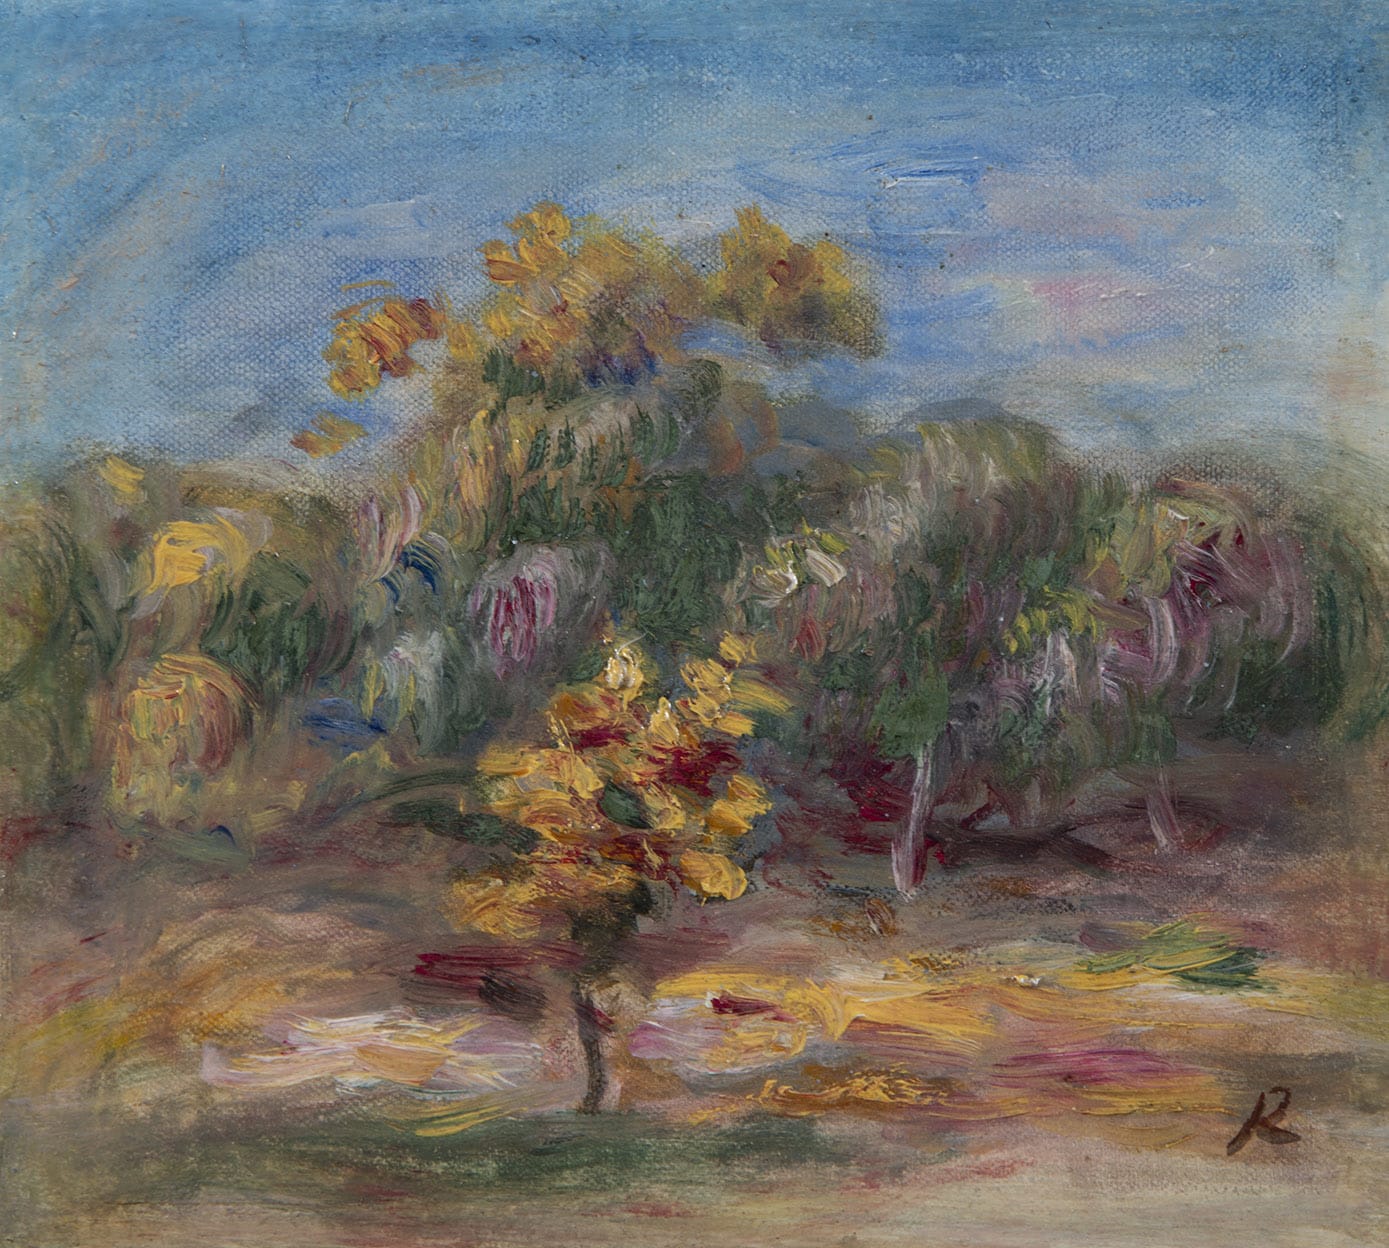 PIERRE-AUGUSTE RENOIR, Paysage - Les arbres, circa 1915